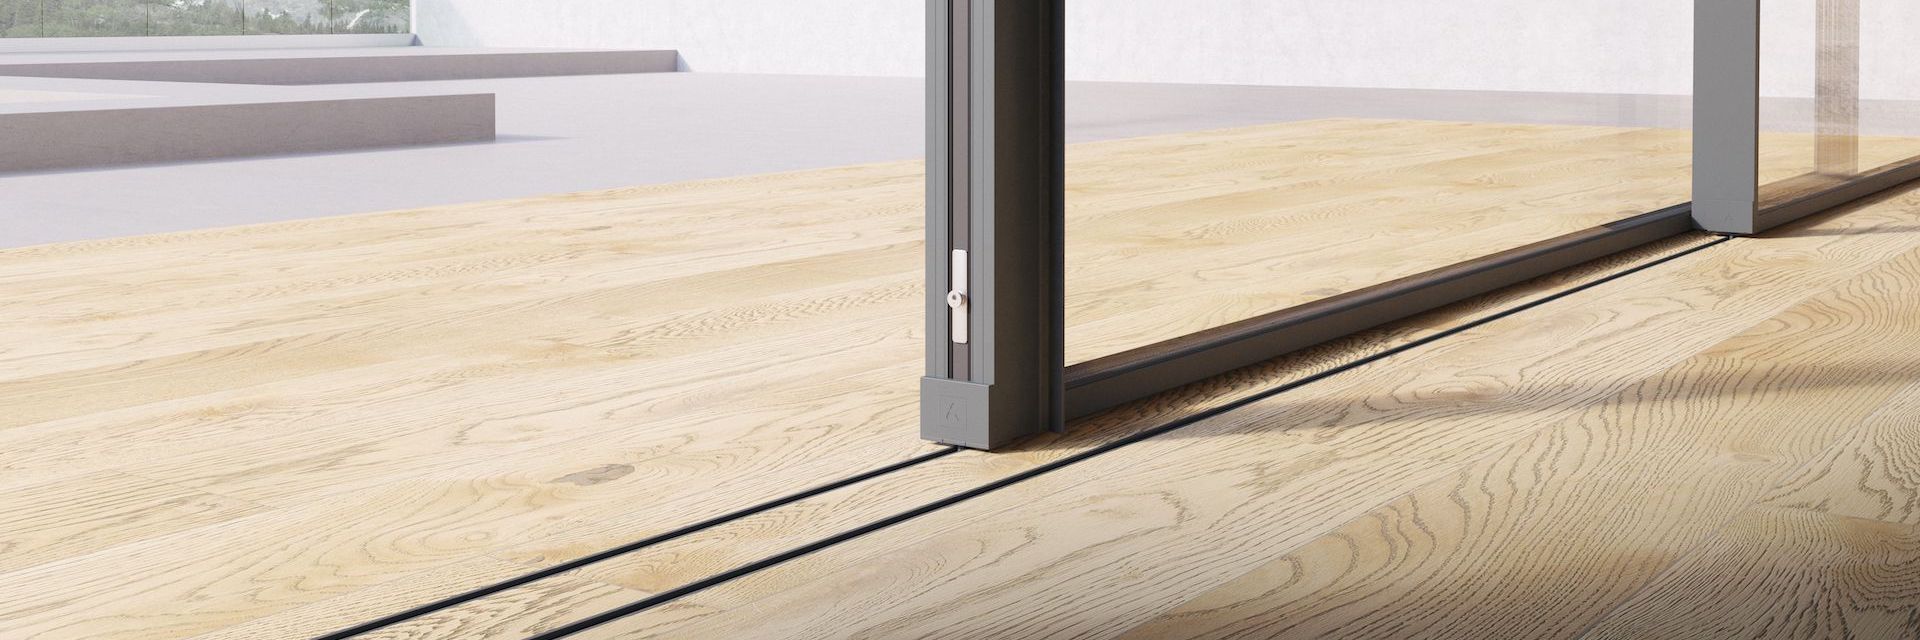 luxury aluminium sliding door